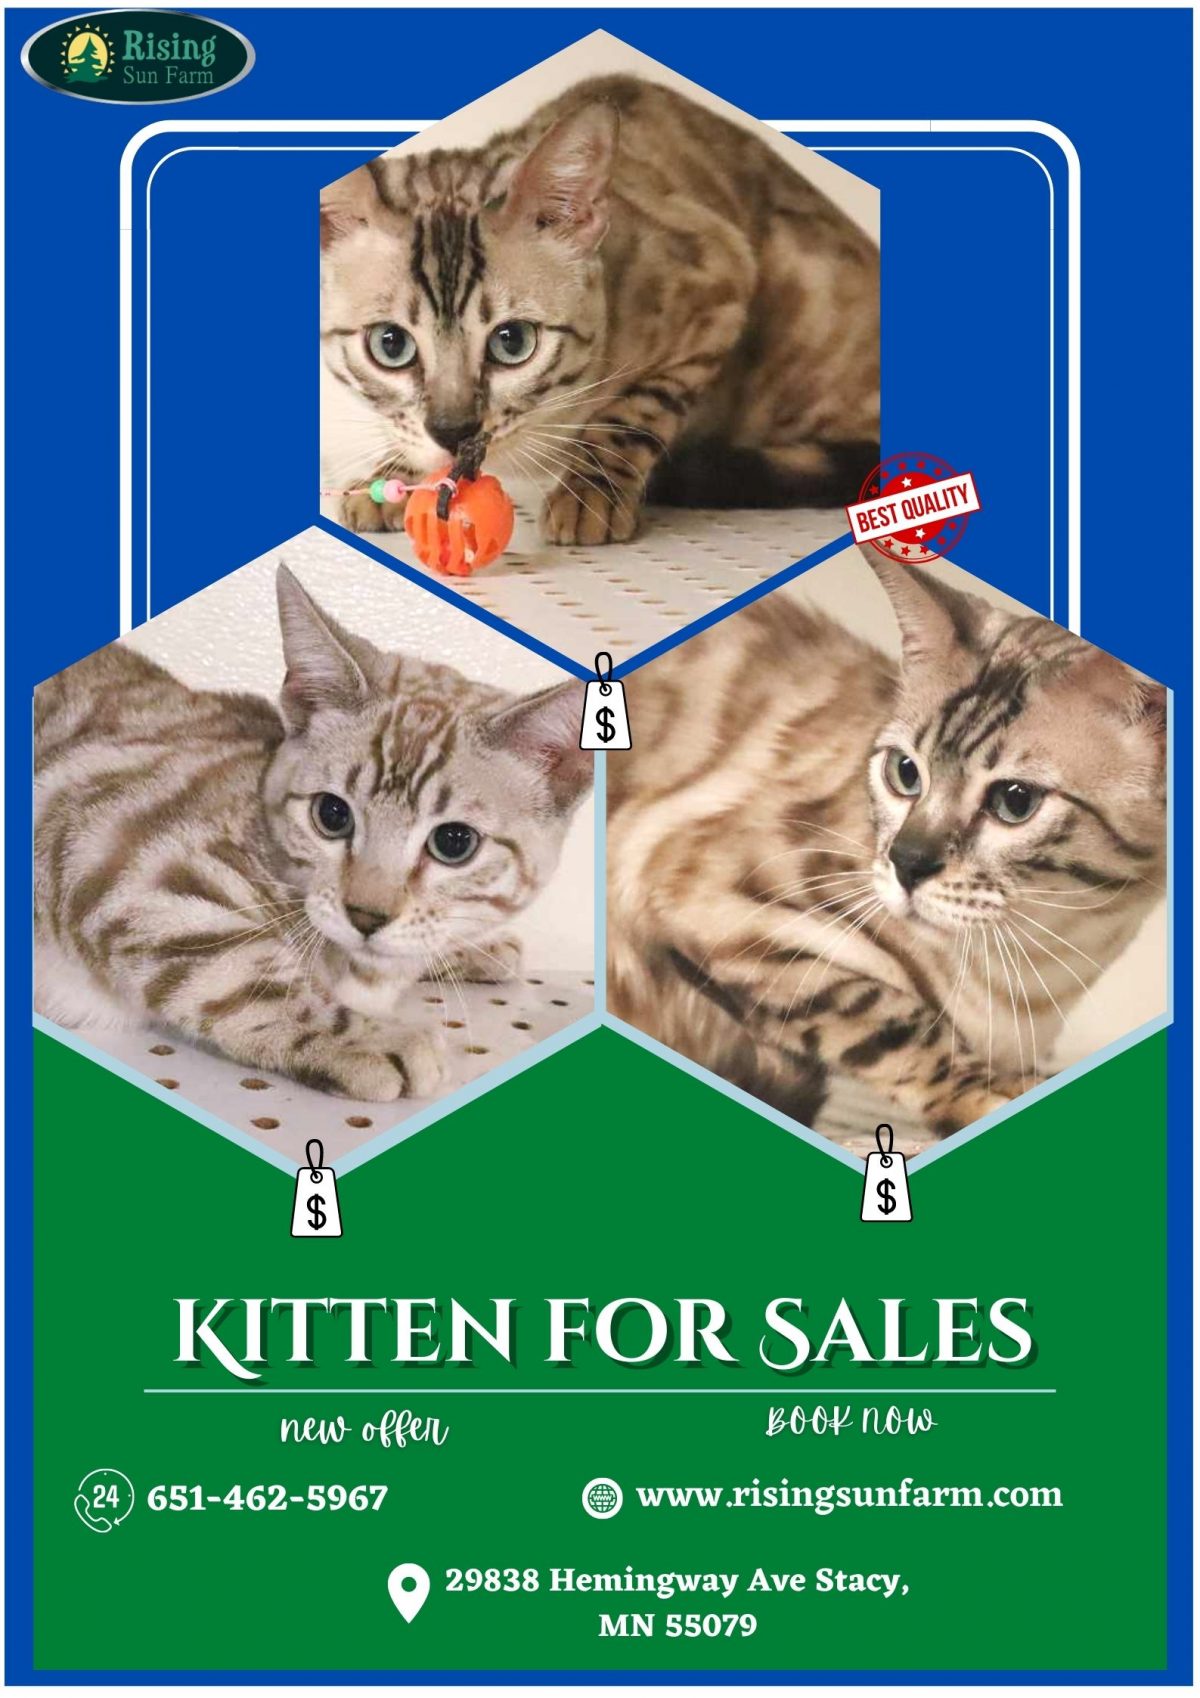 Kitten for Sales